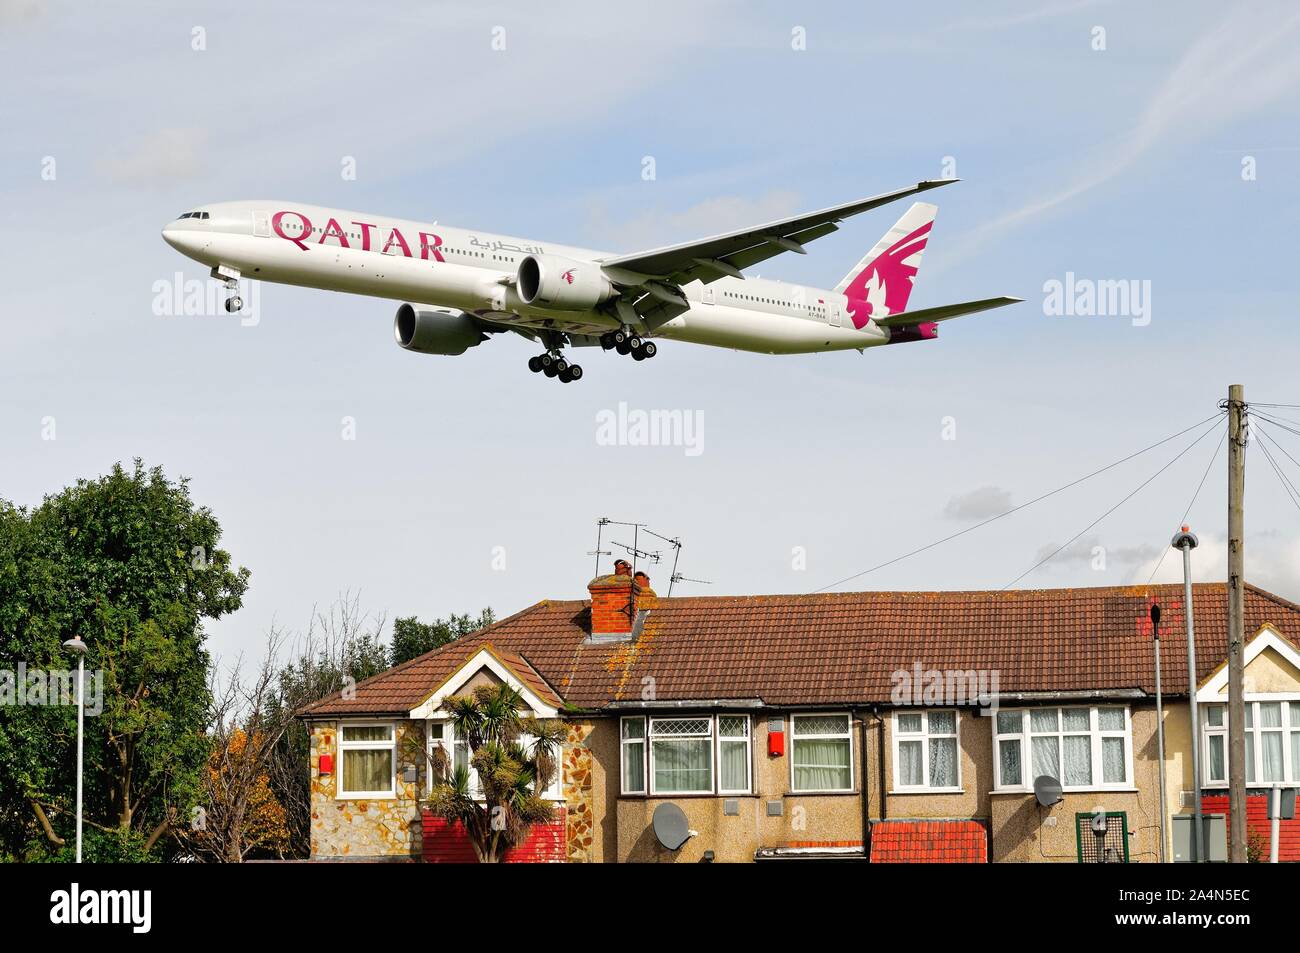 Ein Qatar Airways Boeing 777-300Jet fliegen niedrig über die Dächer am Hatton Cross auf dem Landeanflug nach Heathrow London England Großbritannien Stockfoto